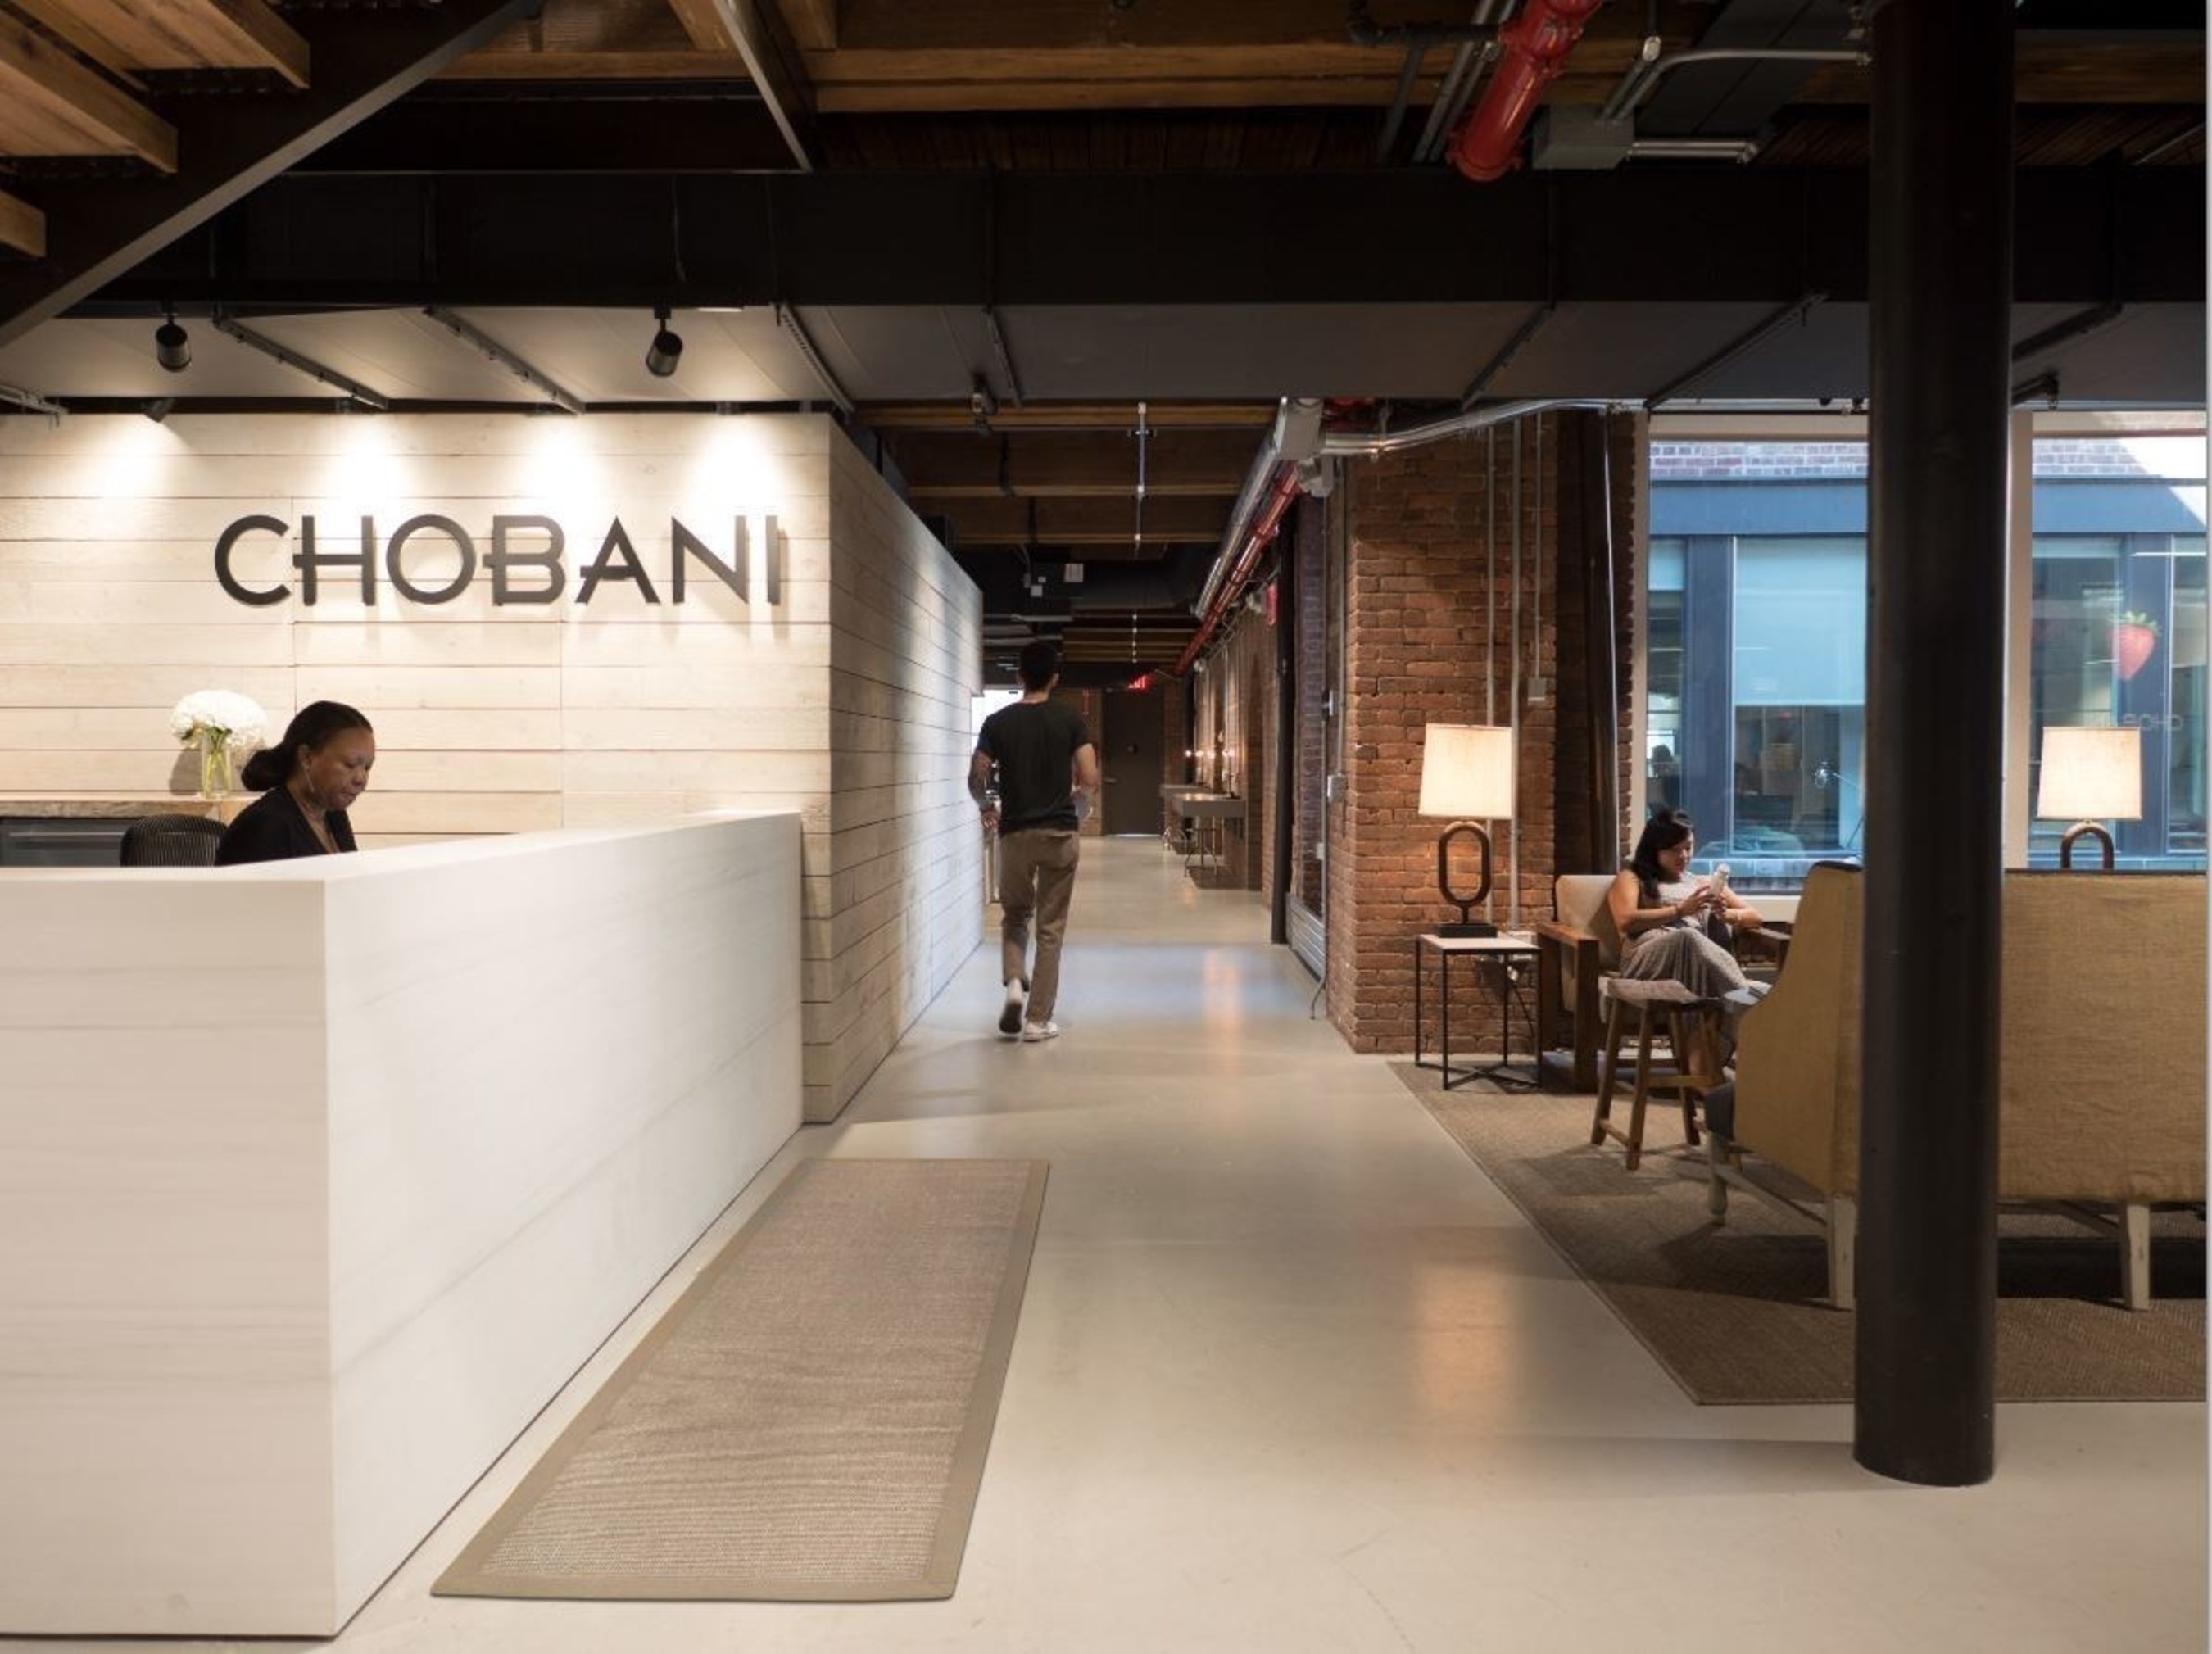 Chobani office in SoHo, New York